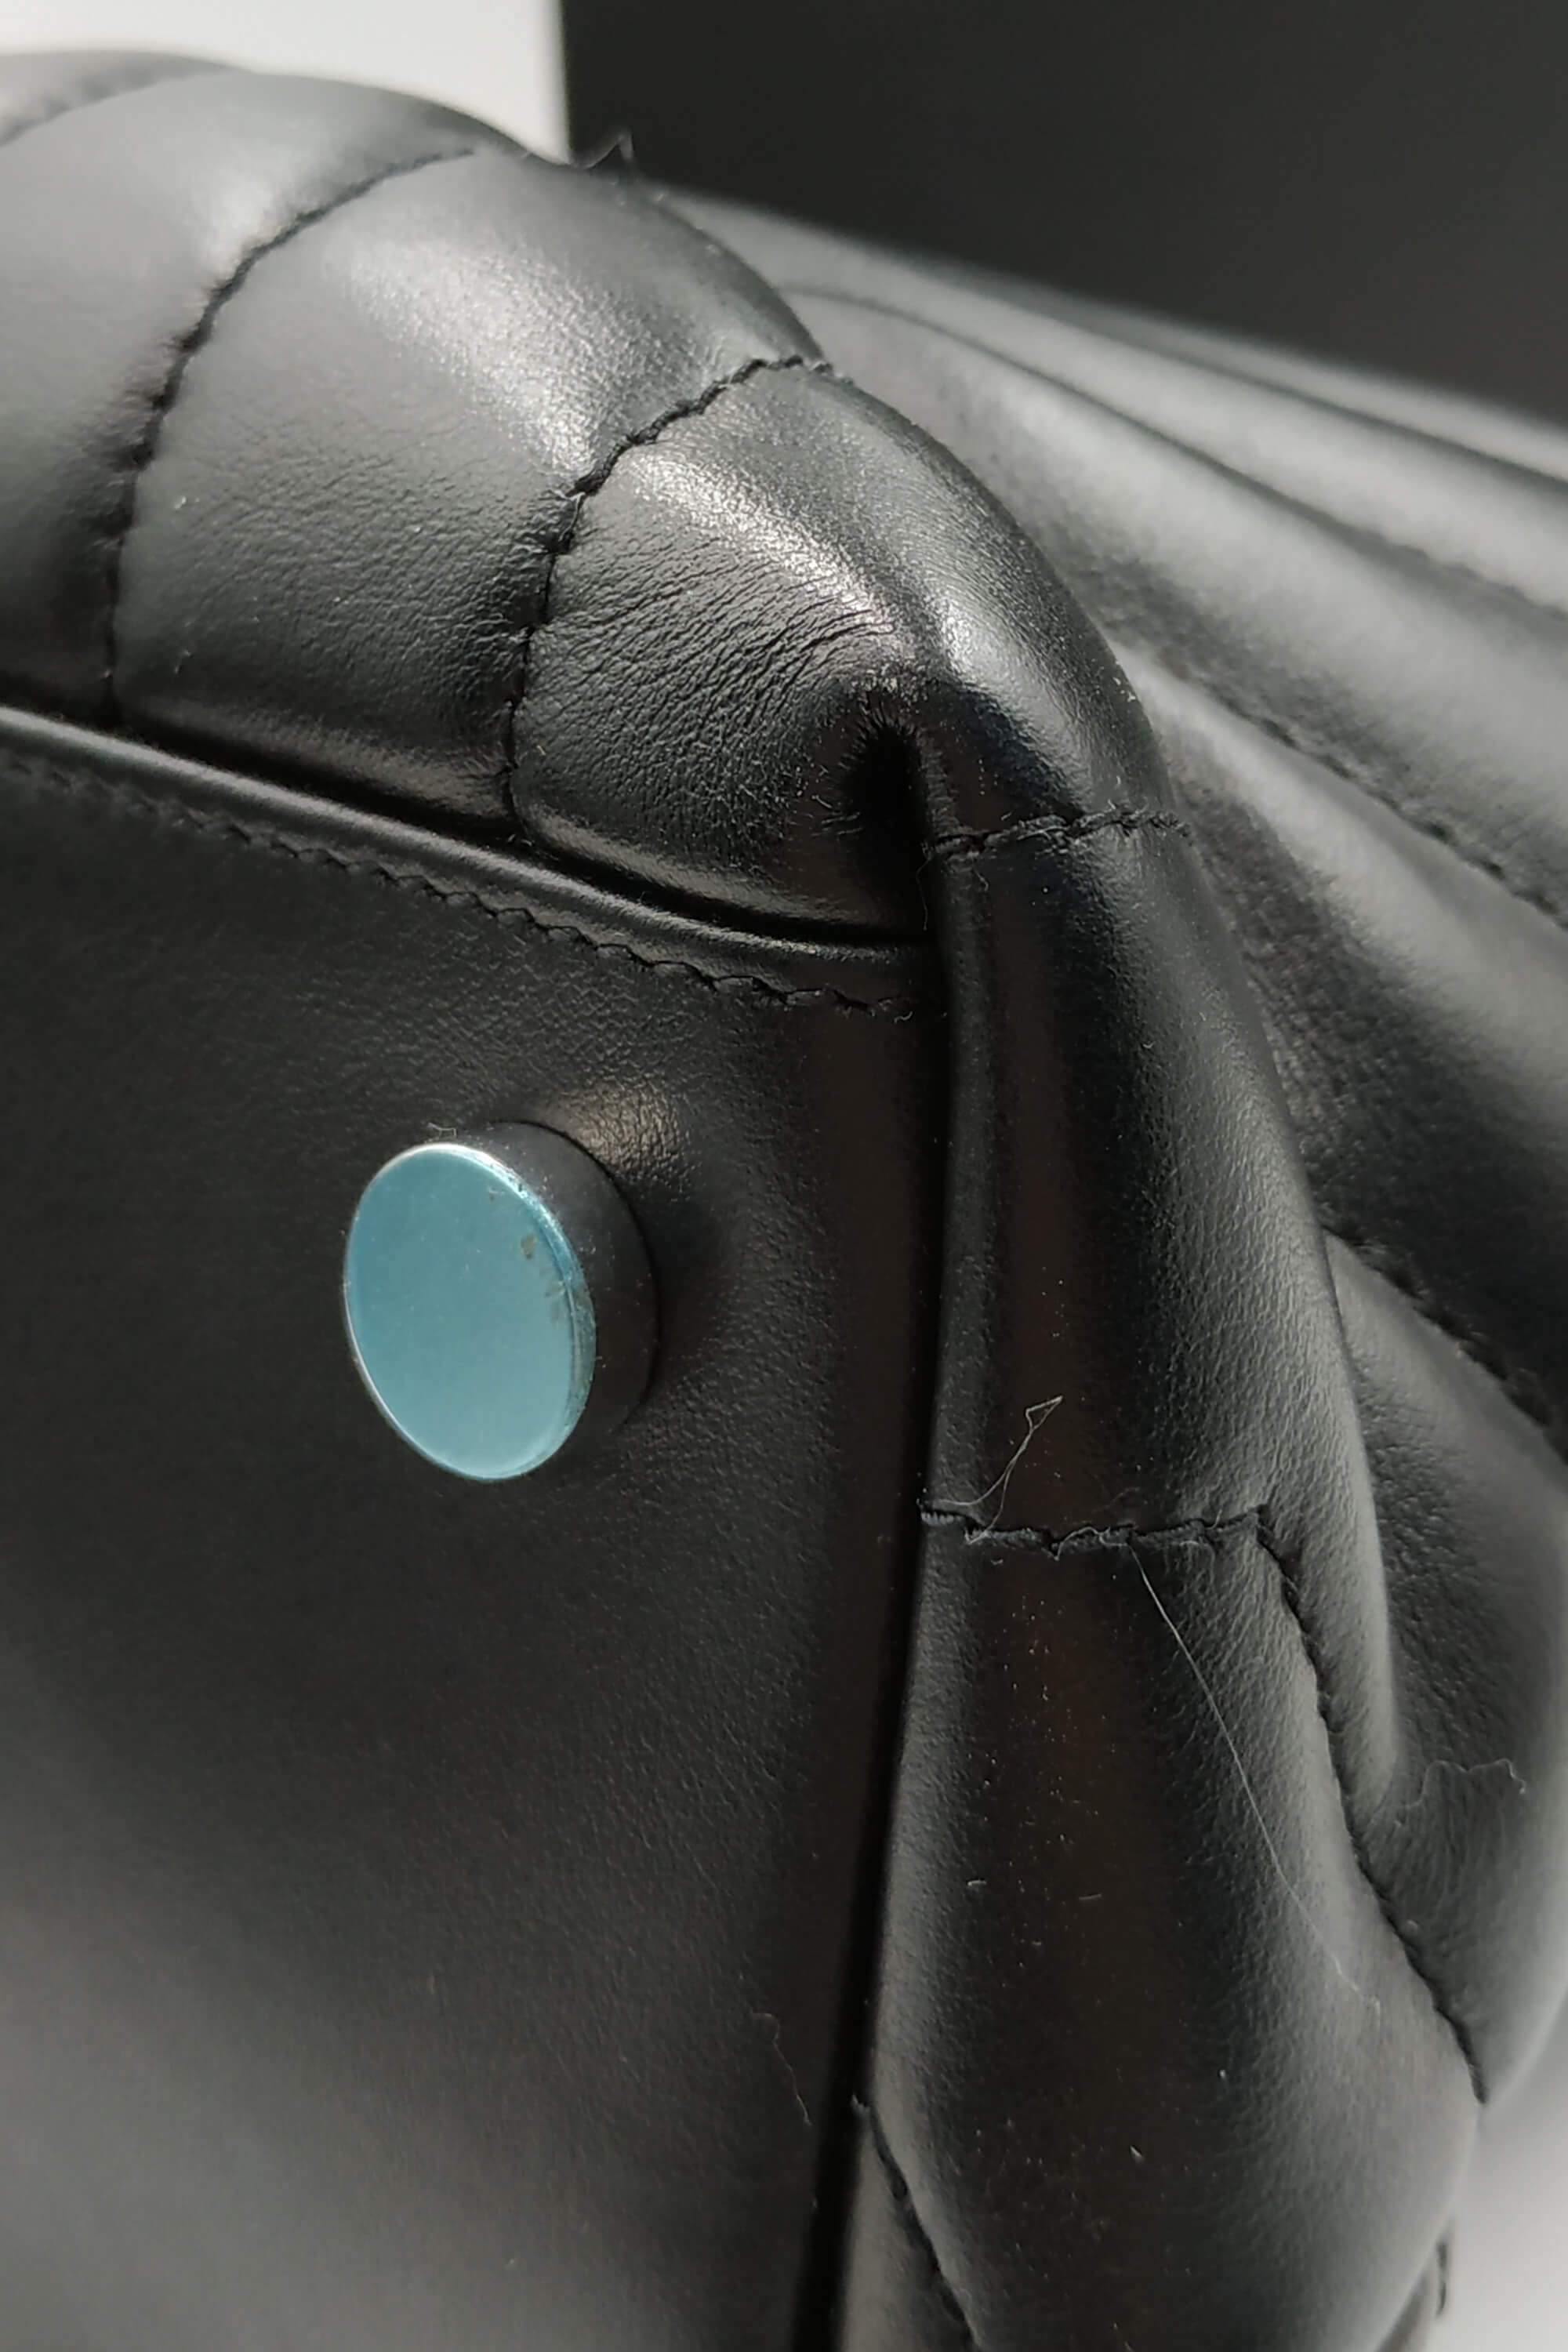 Saint Laurent Loulou Shoulder Bag Black Leather Silver Hardware